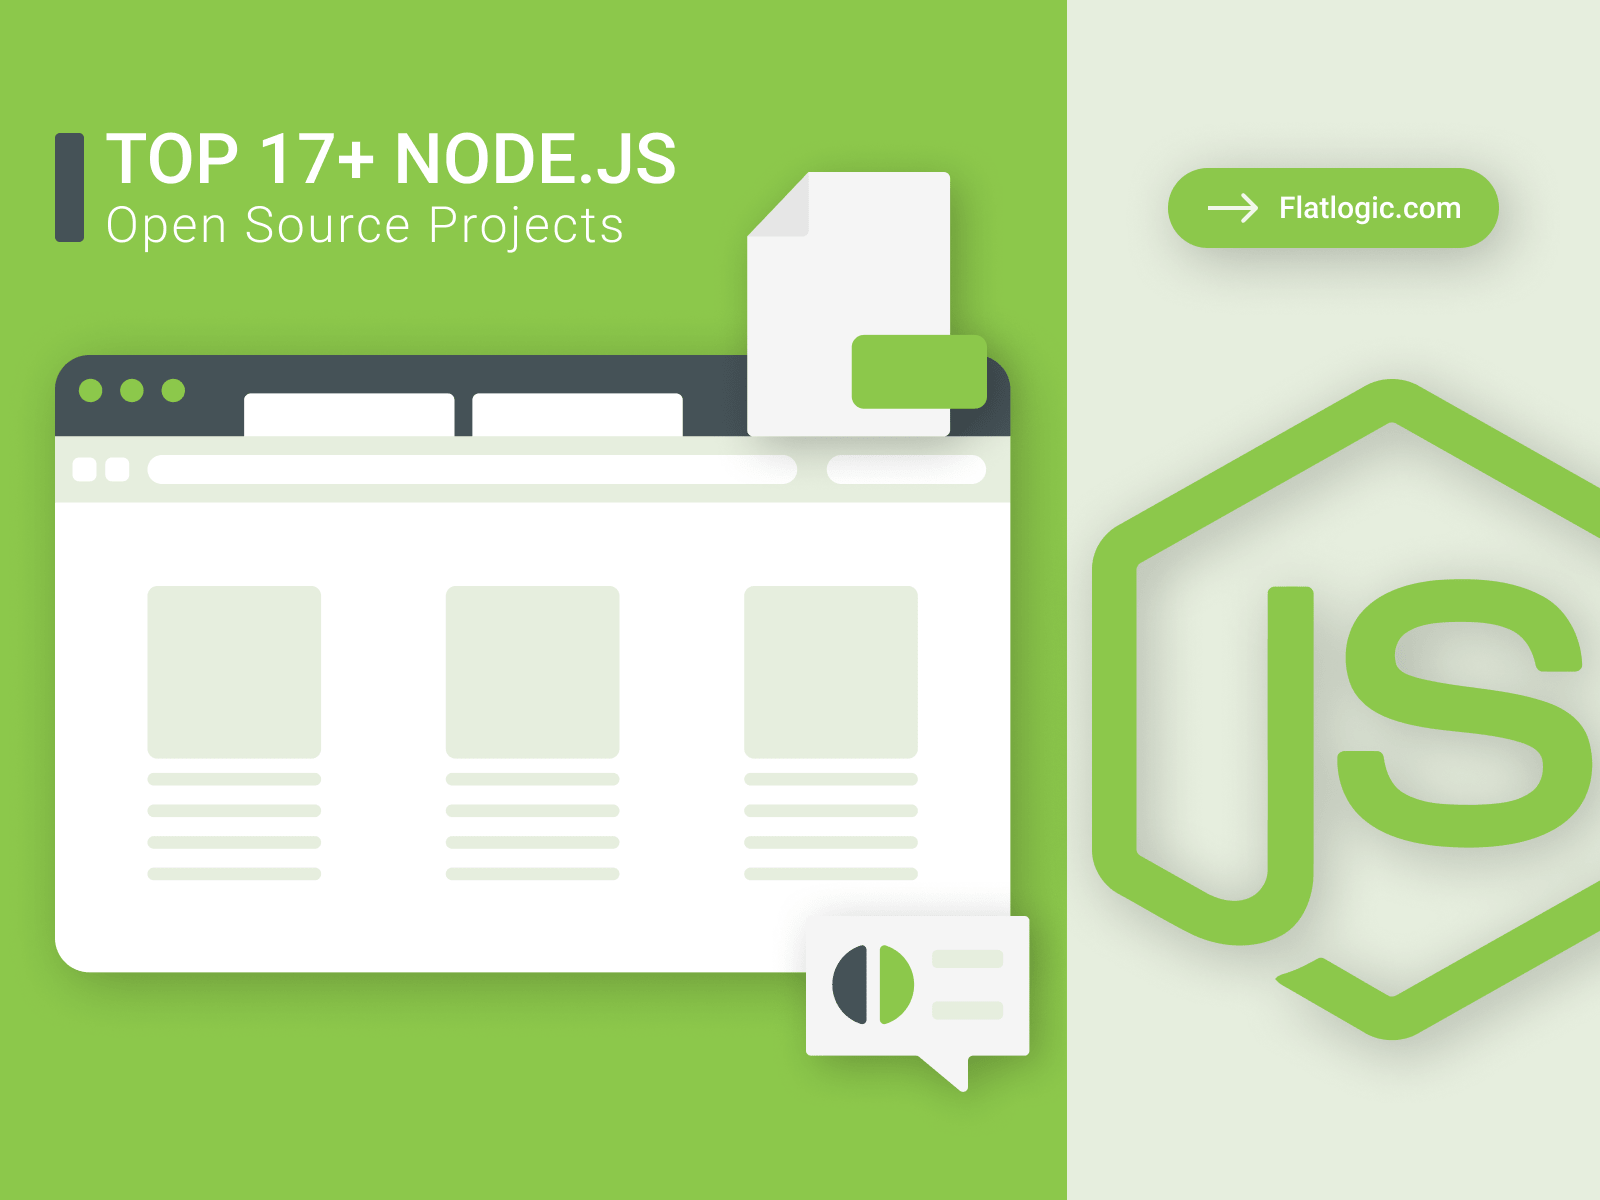 Top 14+ Best Node.js Open Source Projects 